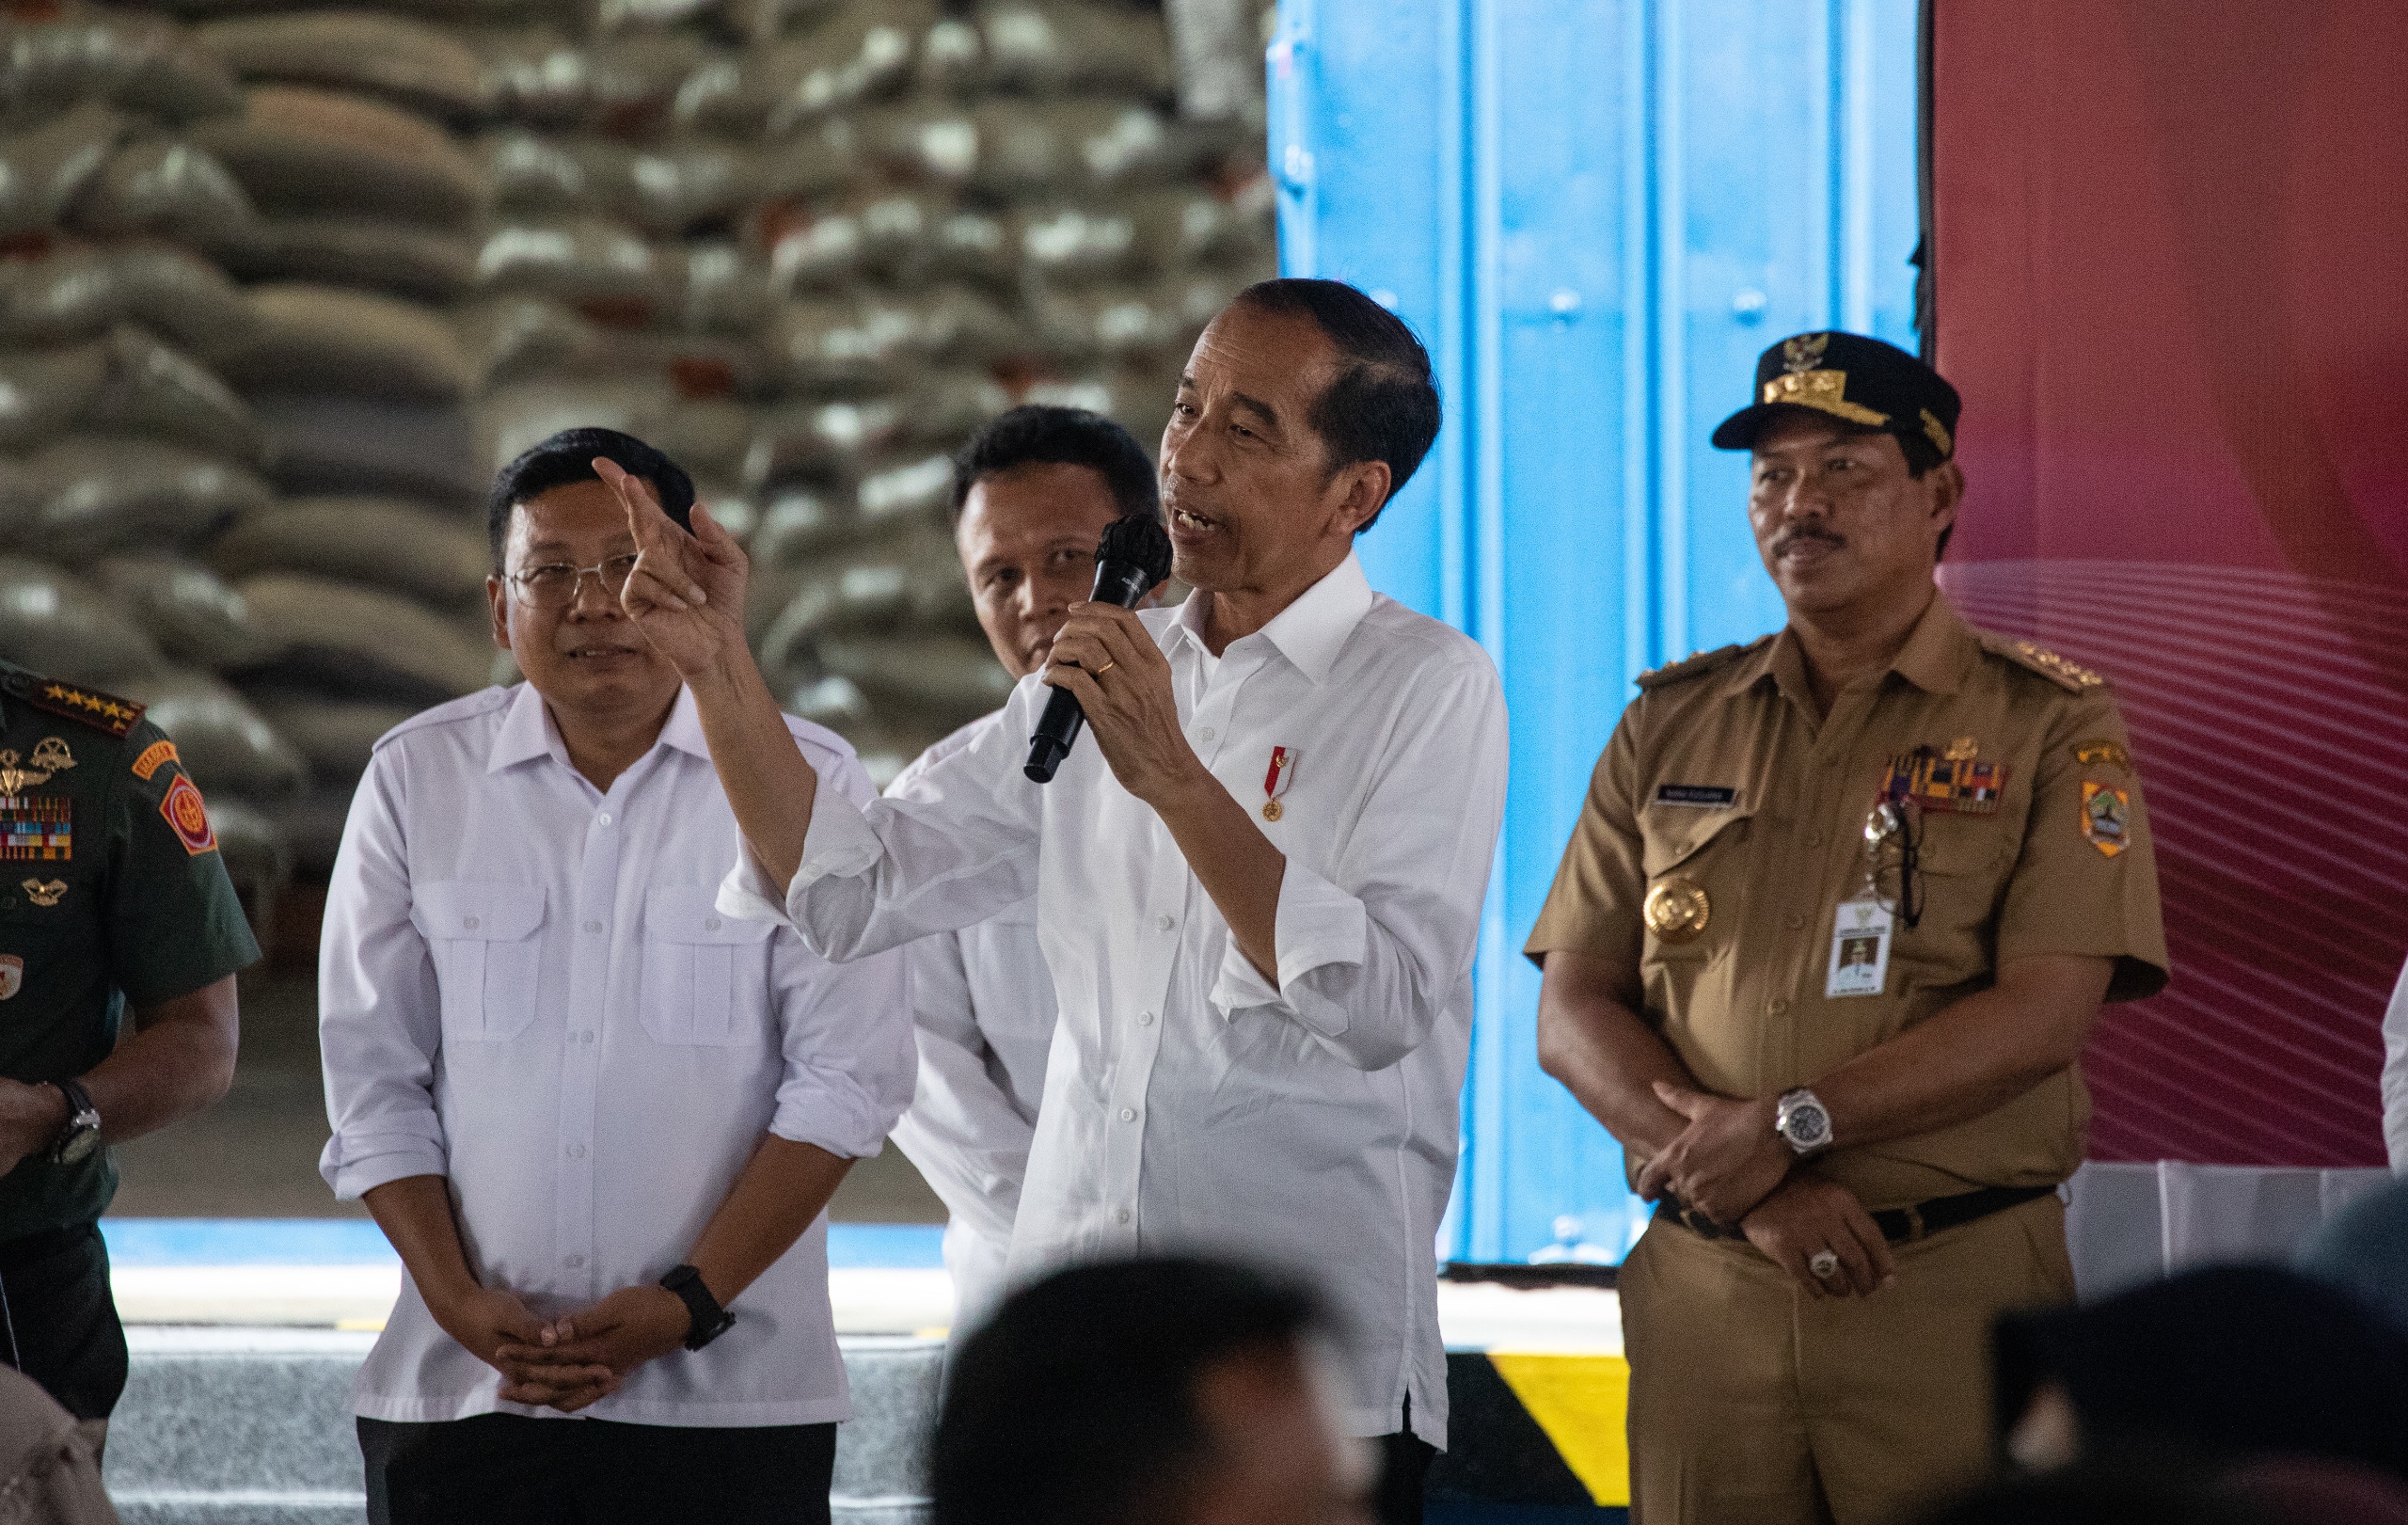 Presiden Jokowi Kunjungi Bulog Munjung Agung Kabupaten Tegal, Bagikan Cadangan Beras Pemerintah